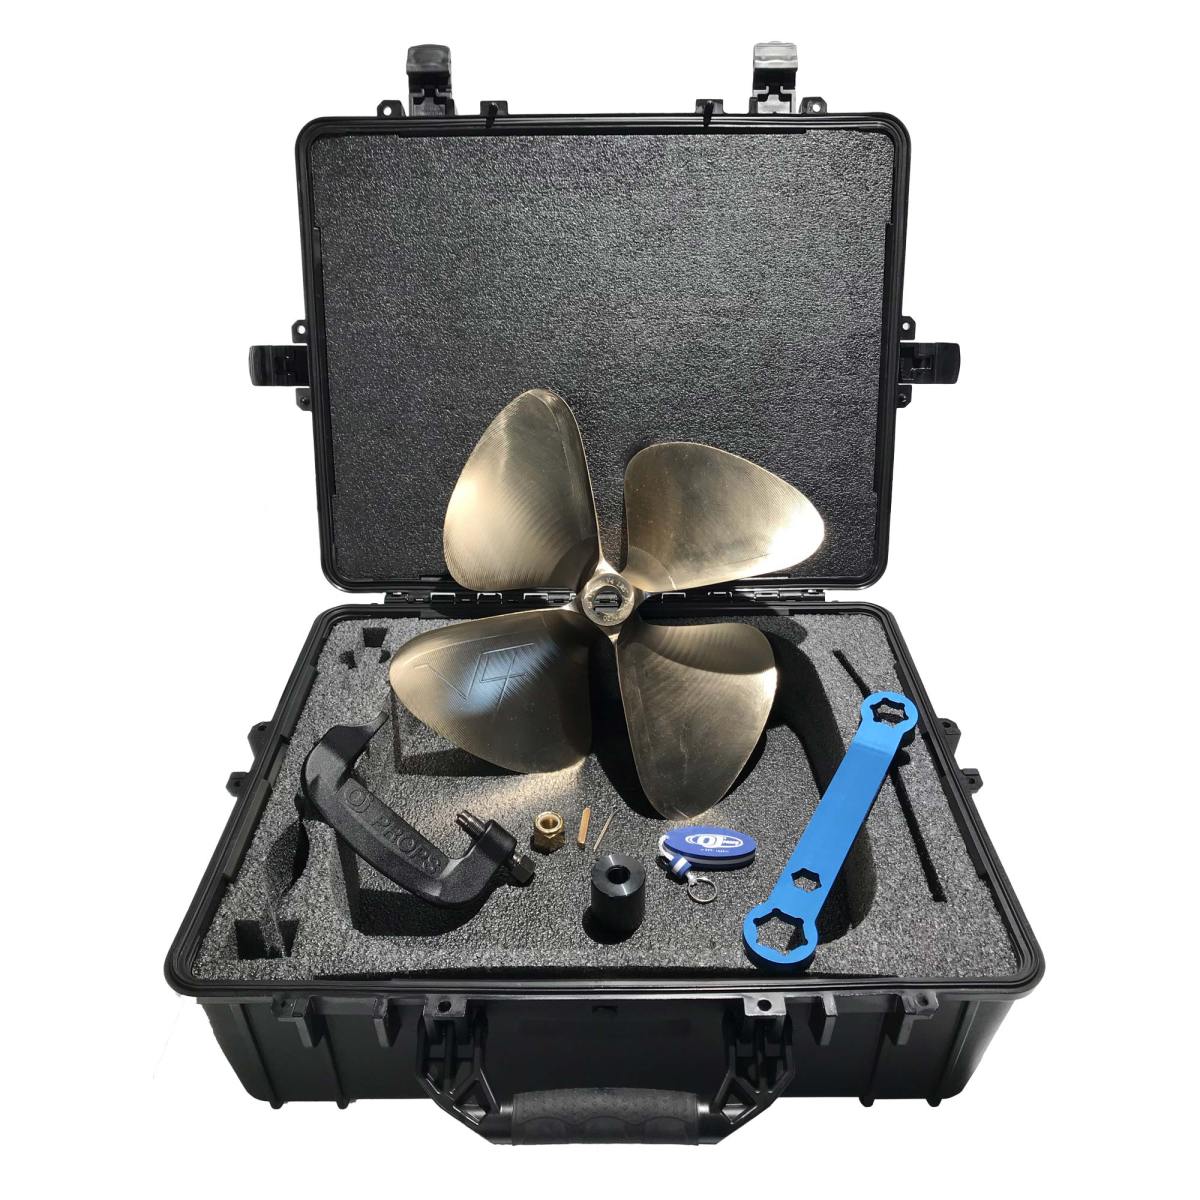 Just-In-Case Prop Kit - 18" Puller HARD CASE